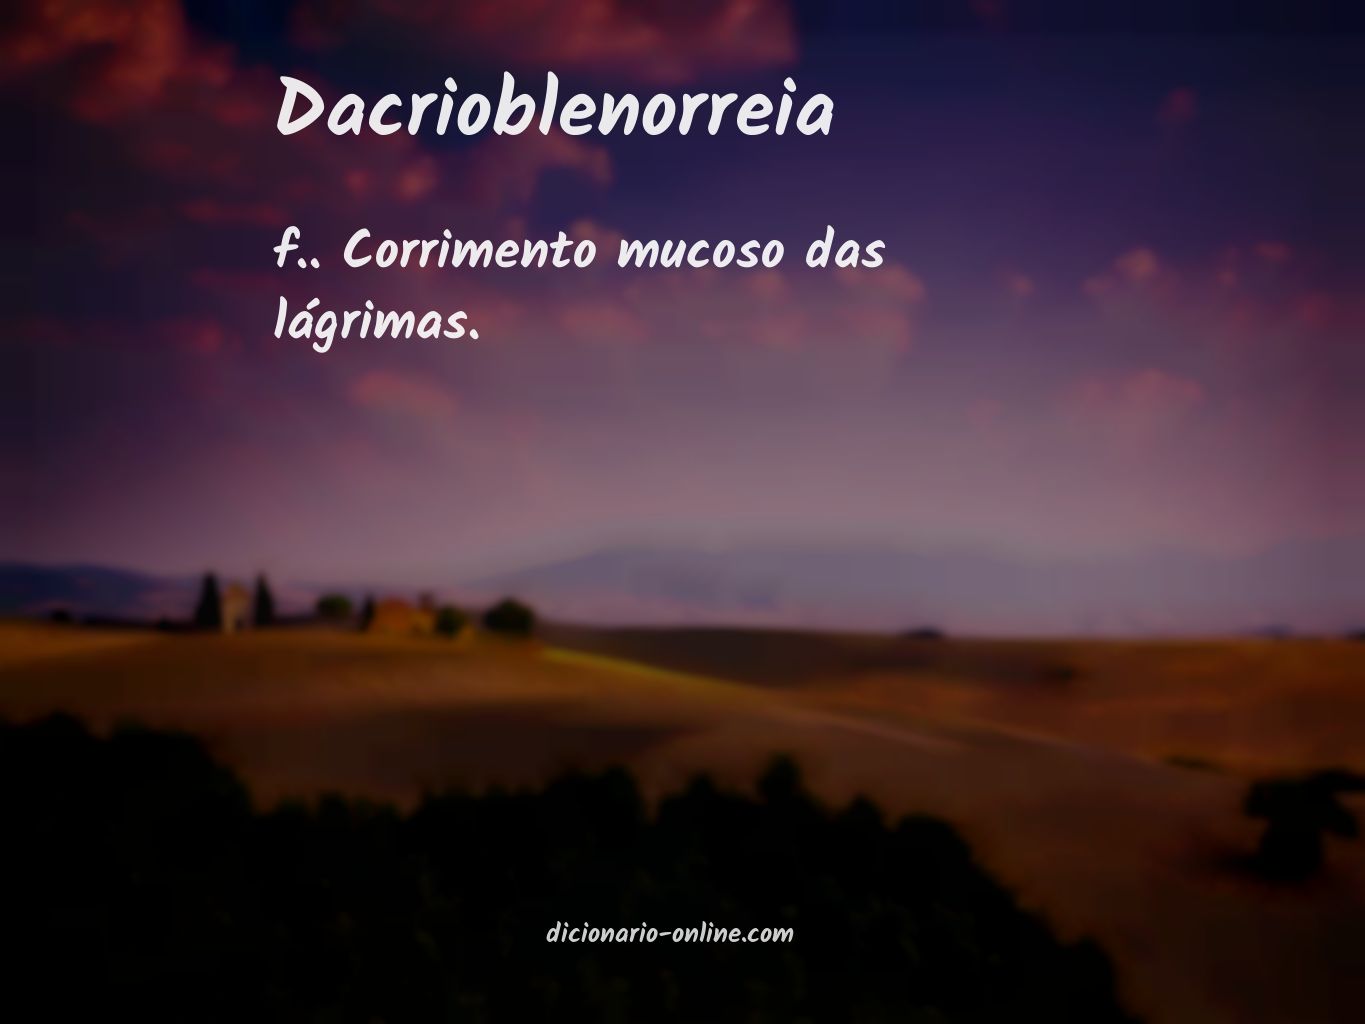 Significado de dacrioblenorreia